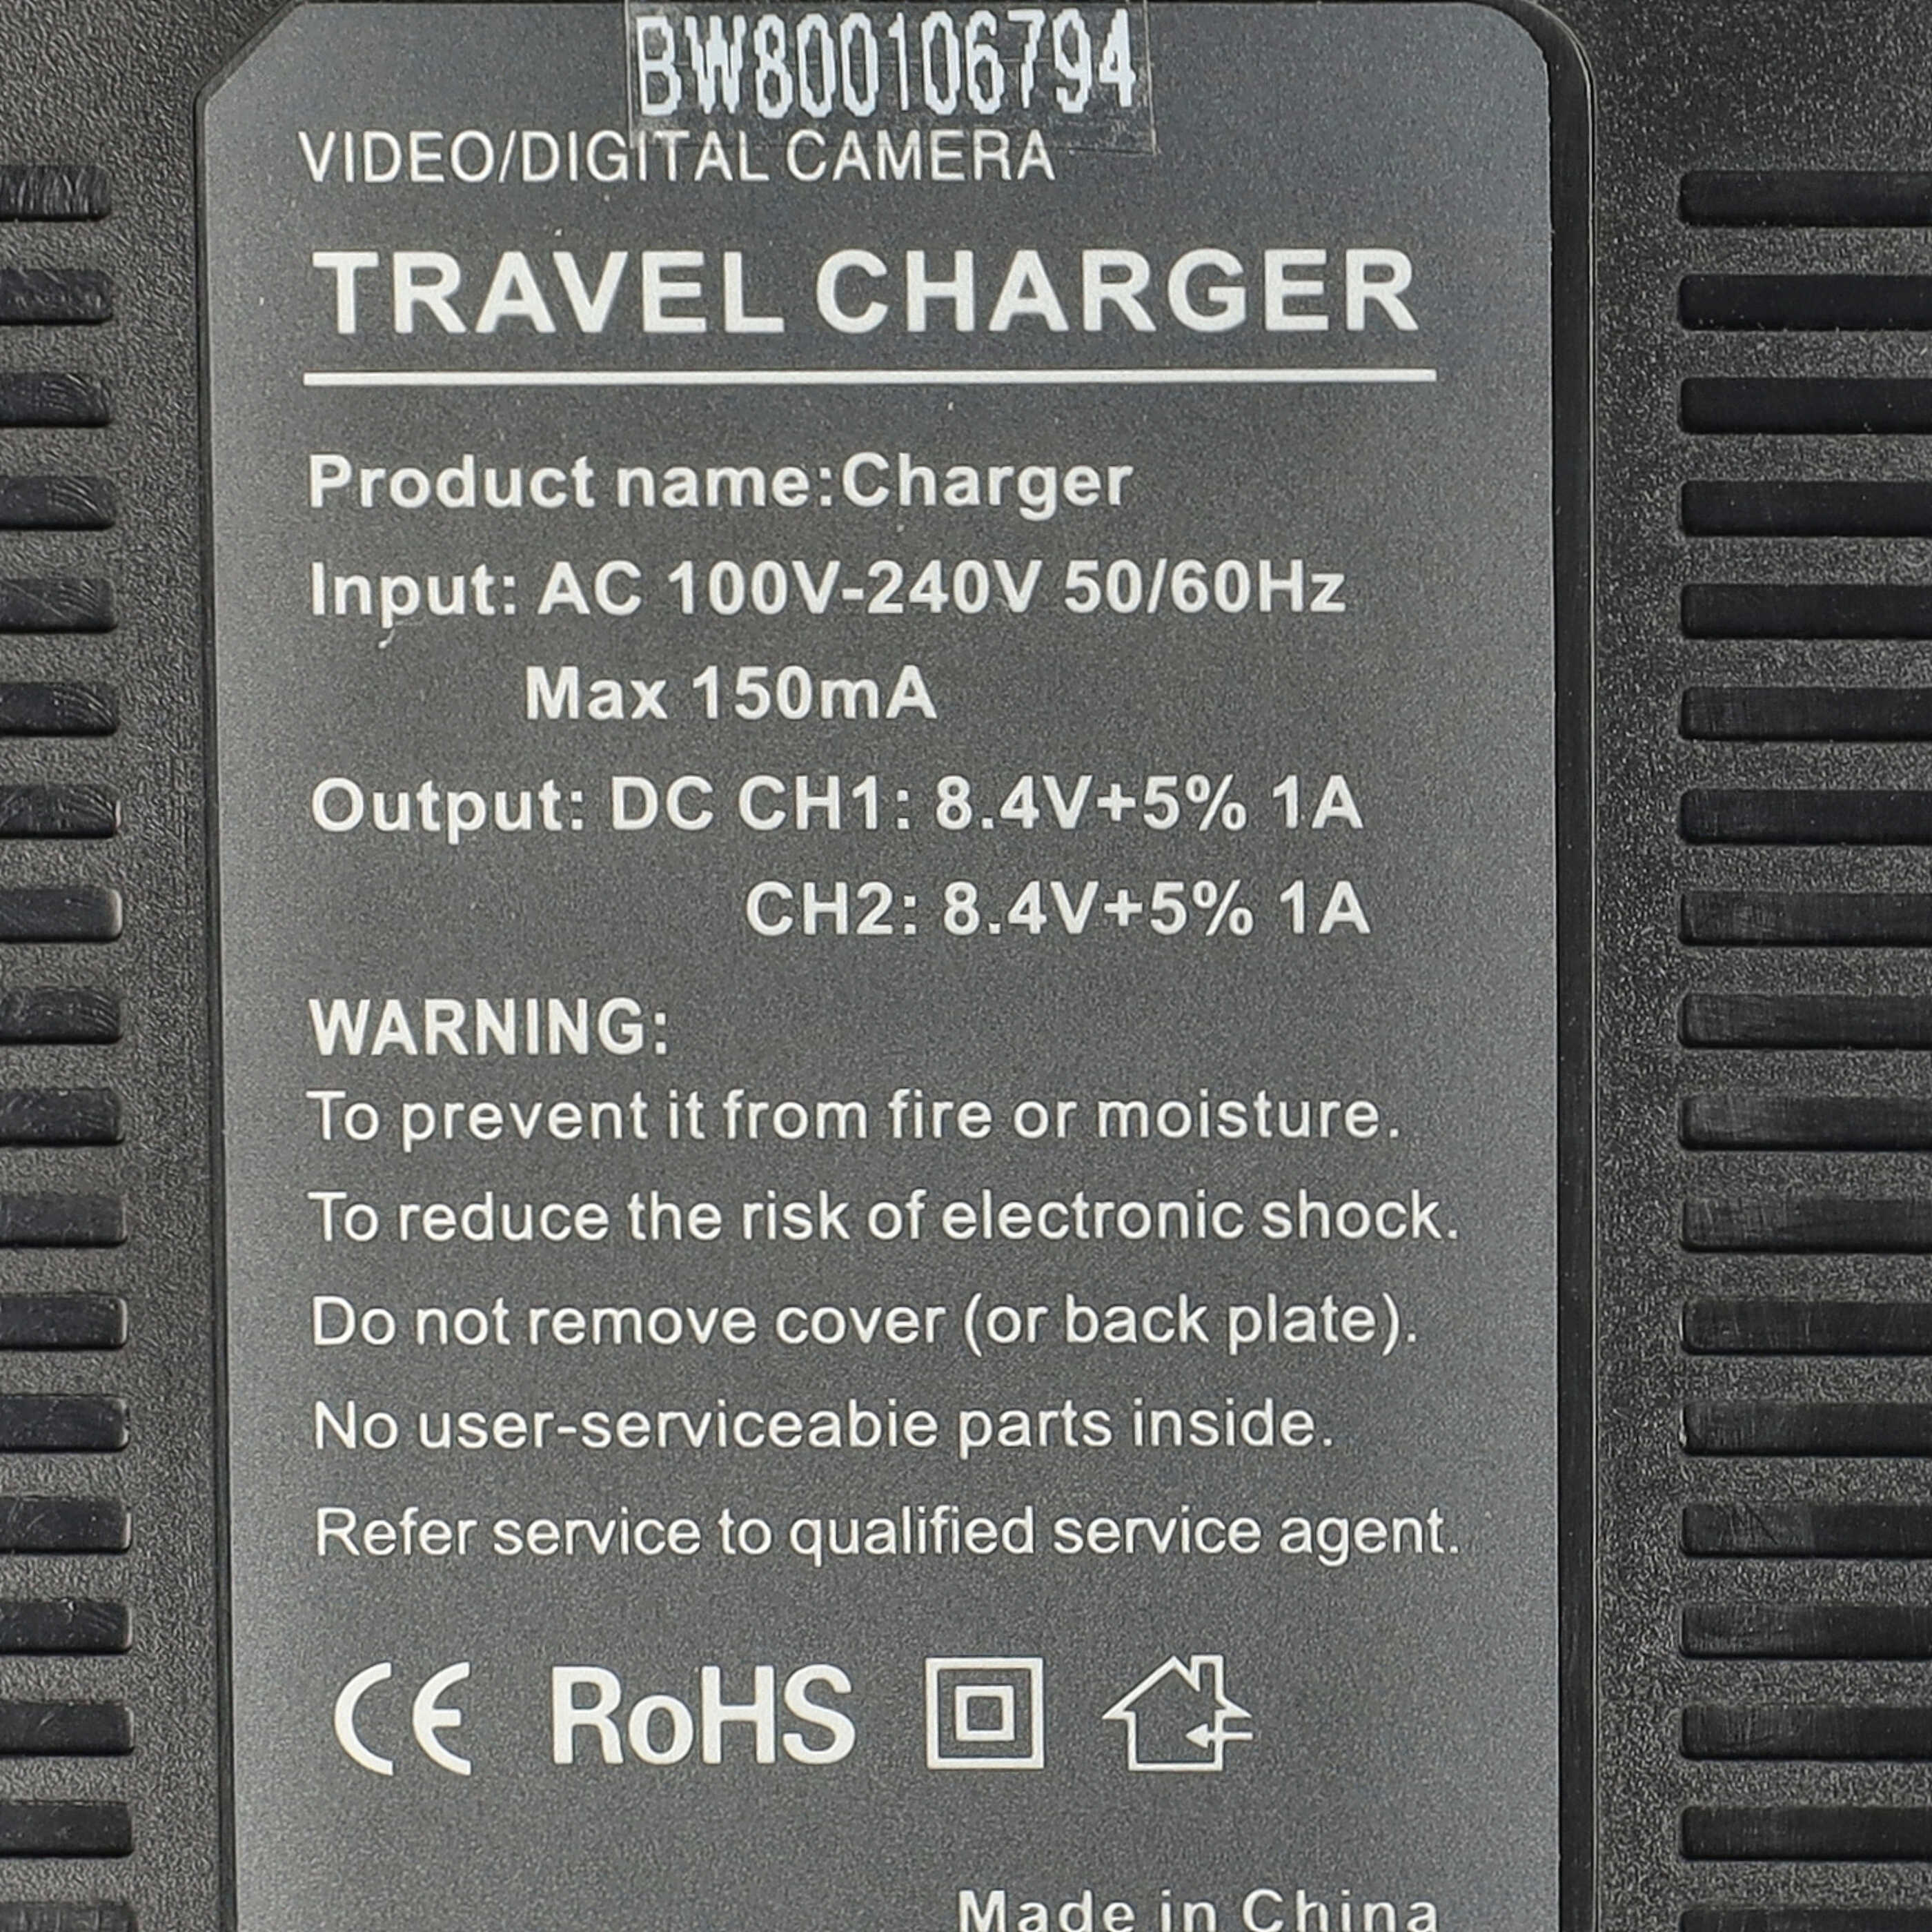 Ładowarka do aparatu GR-D720 i innych - ładowarka akumulatora 0.5 / 0.9 A, 4.2/8.4 V